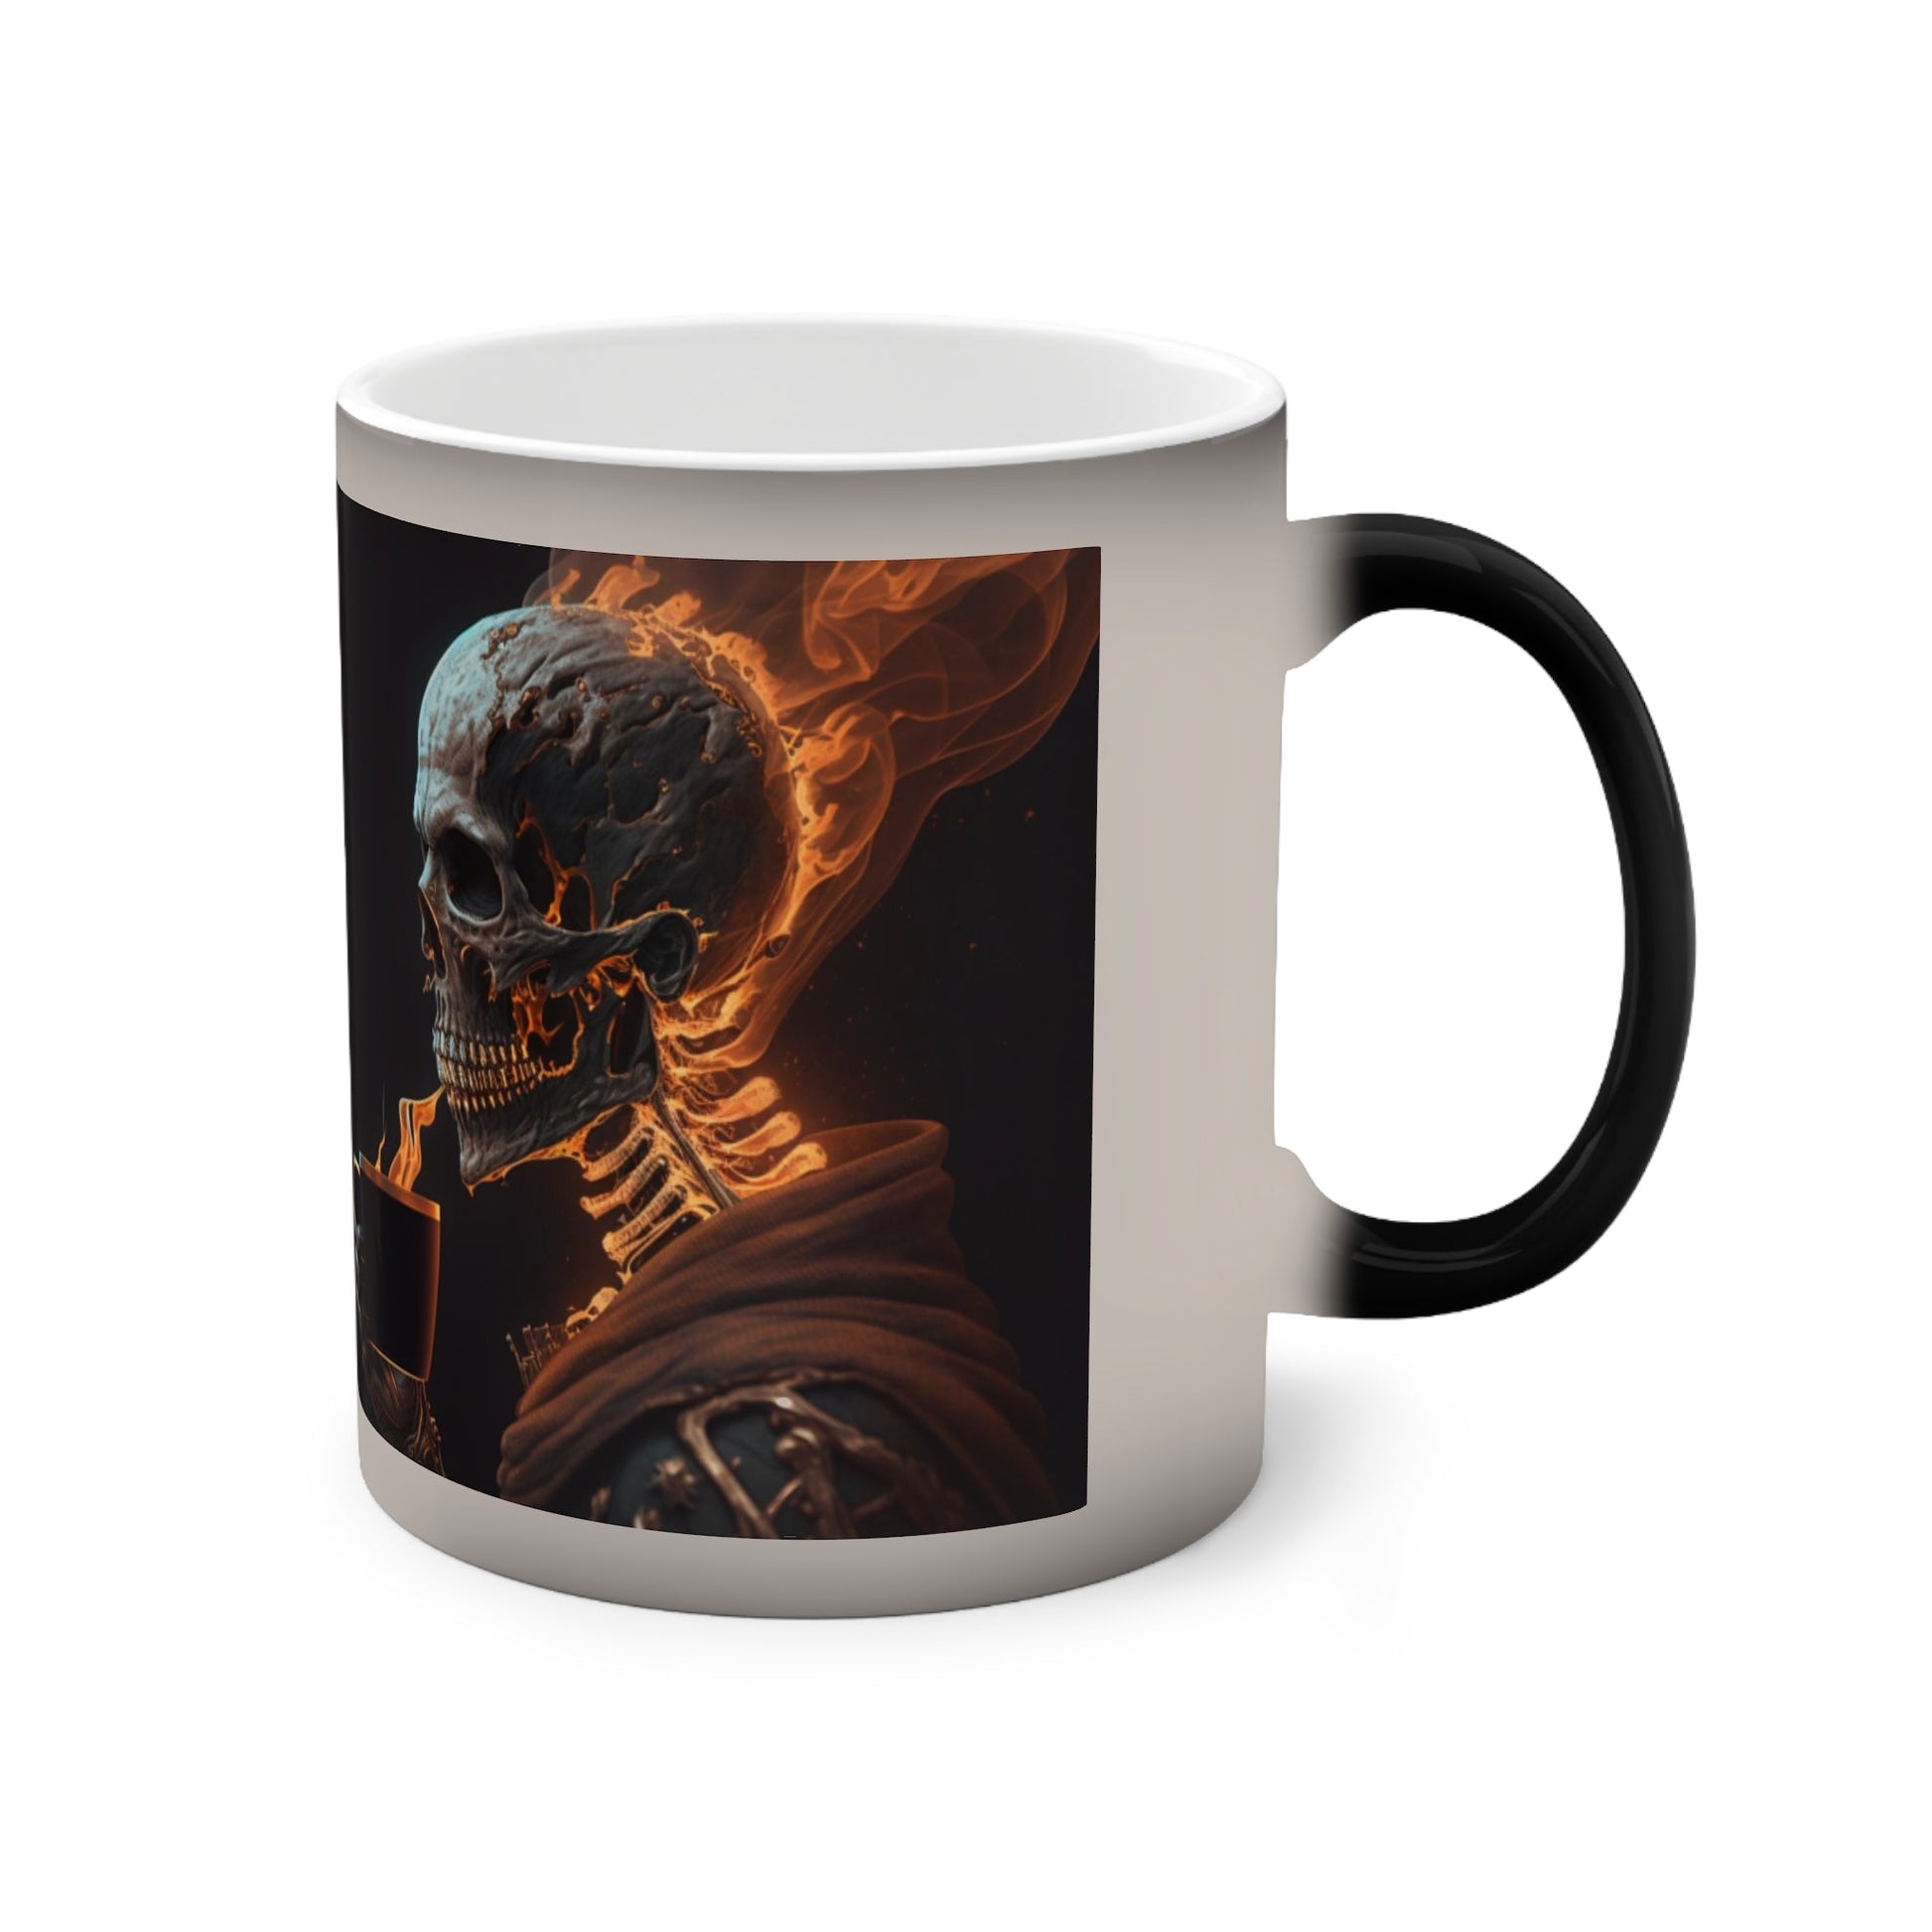 Mug - Smoking Hot Coffee Color-Changing Mug, 11oz